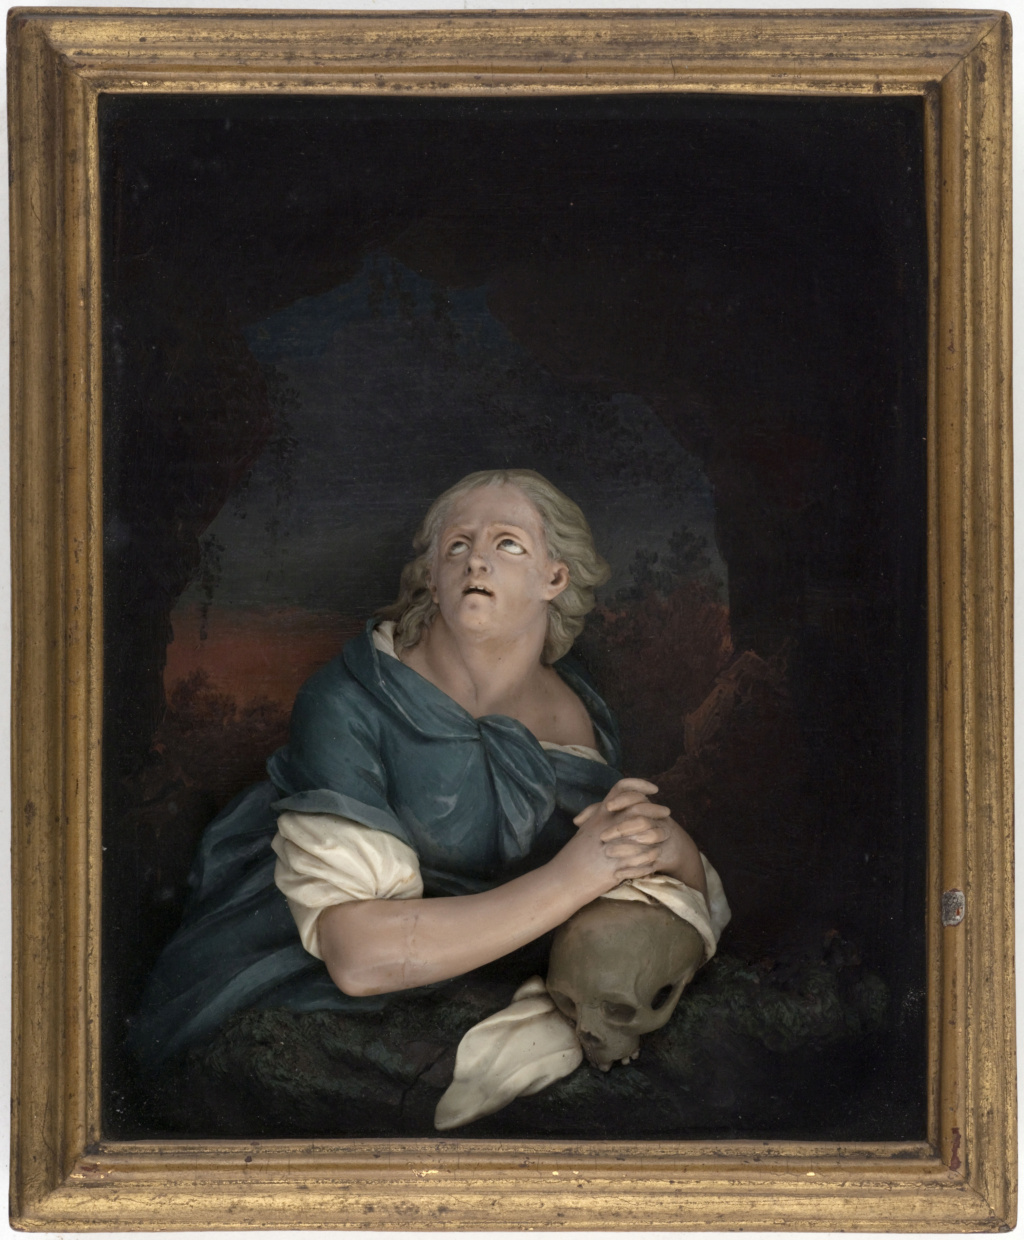 Les portraits et sculptures en cire au XVIIIe siècle (Céroplastie) Image_65